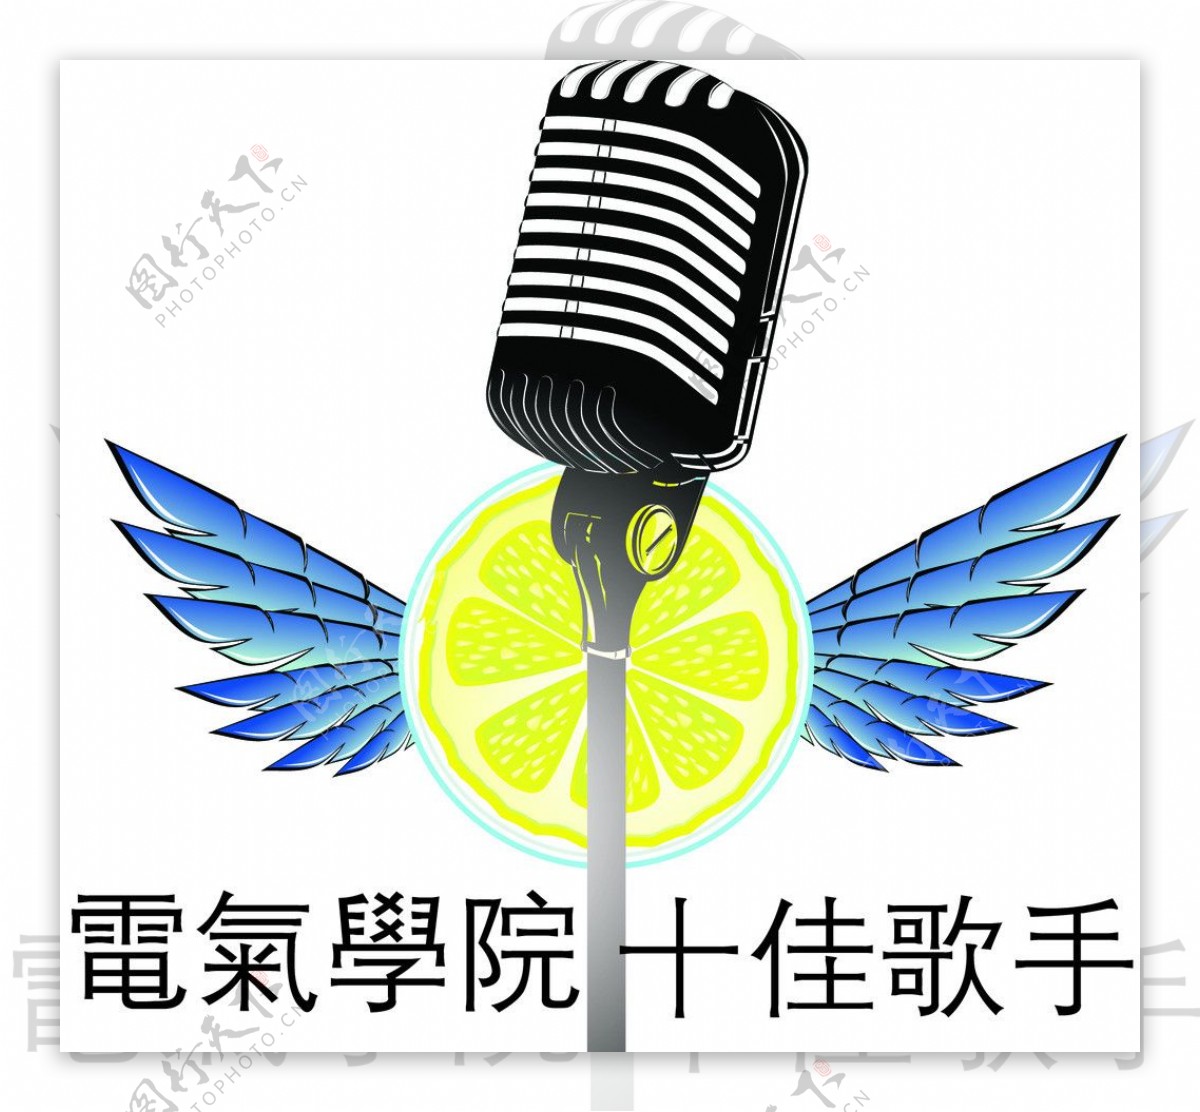 十佳歌手赛logo图片